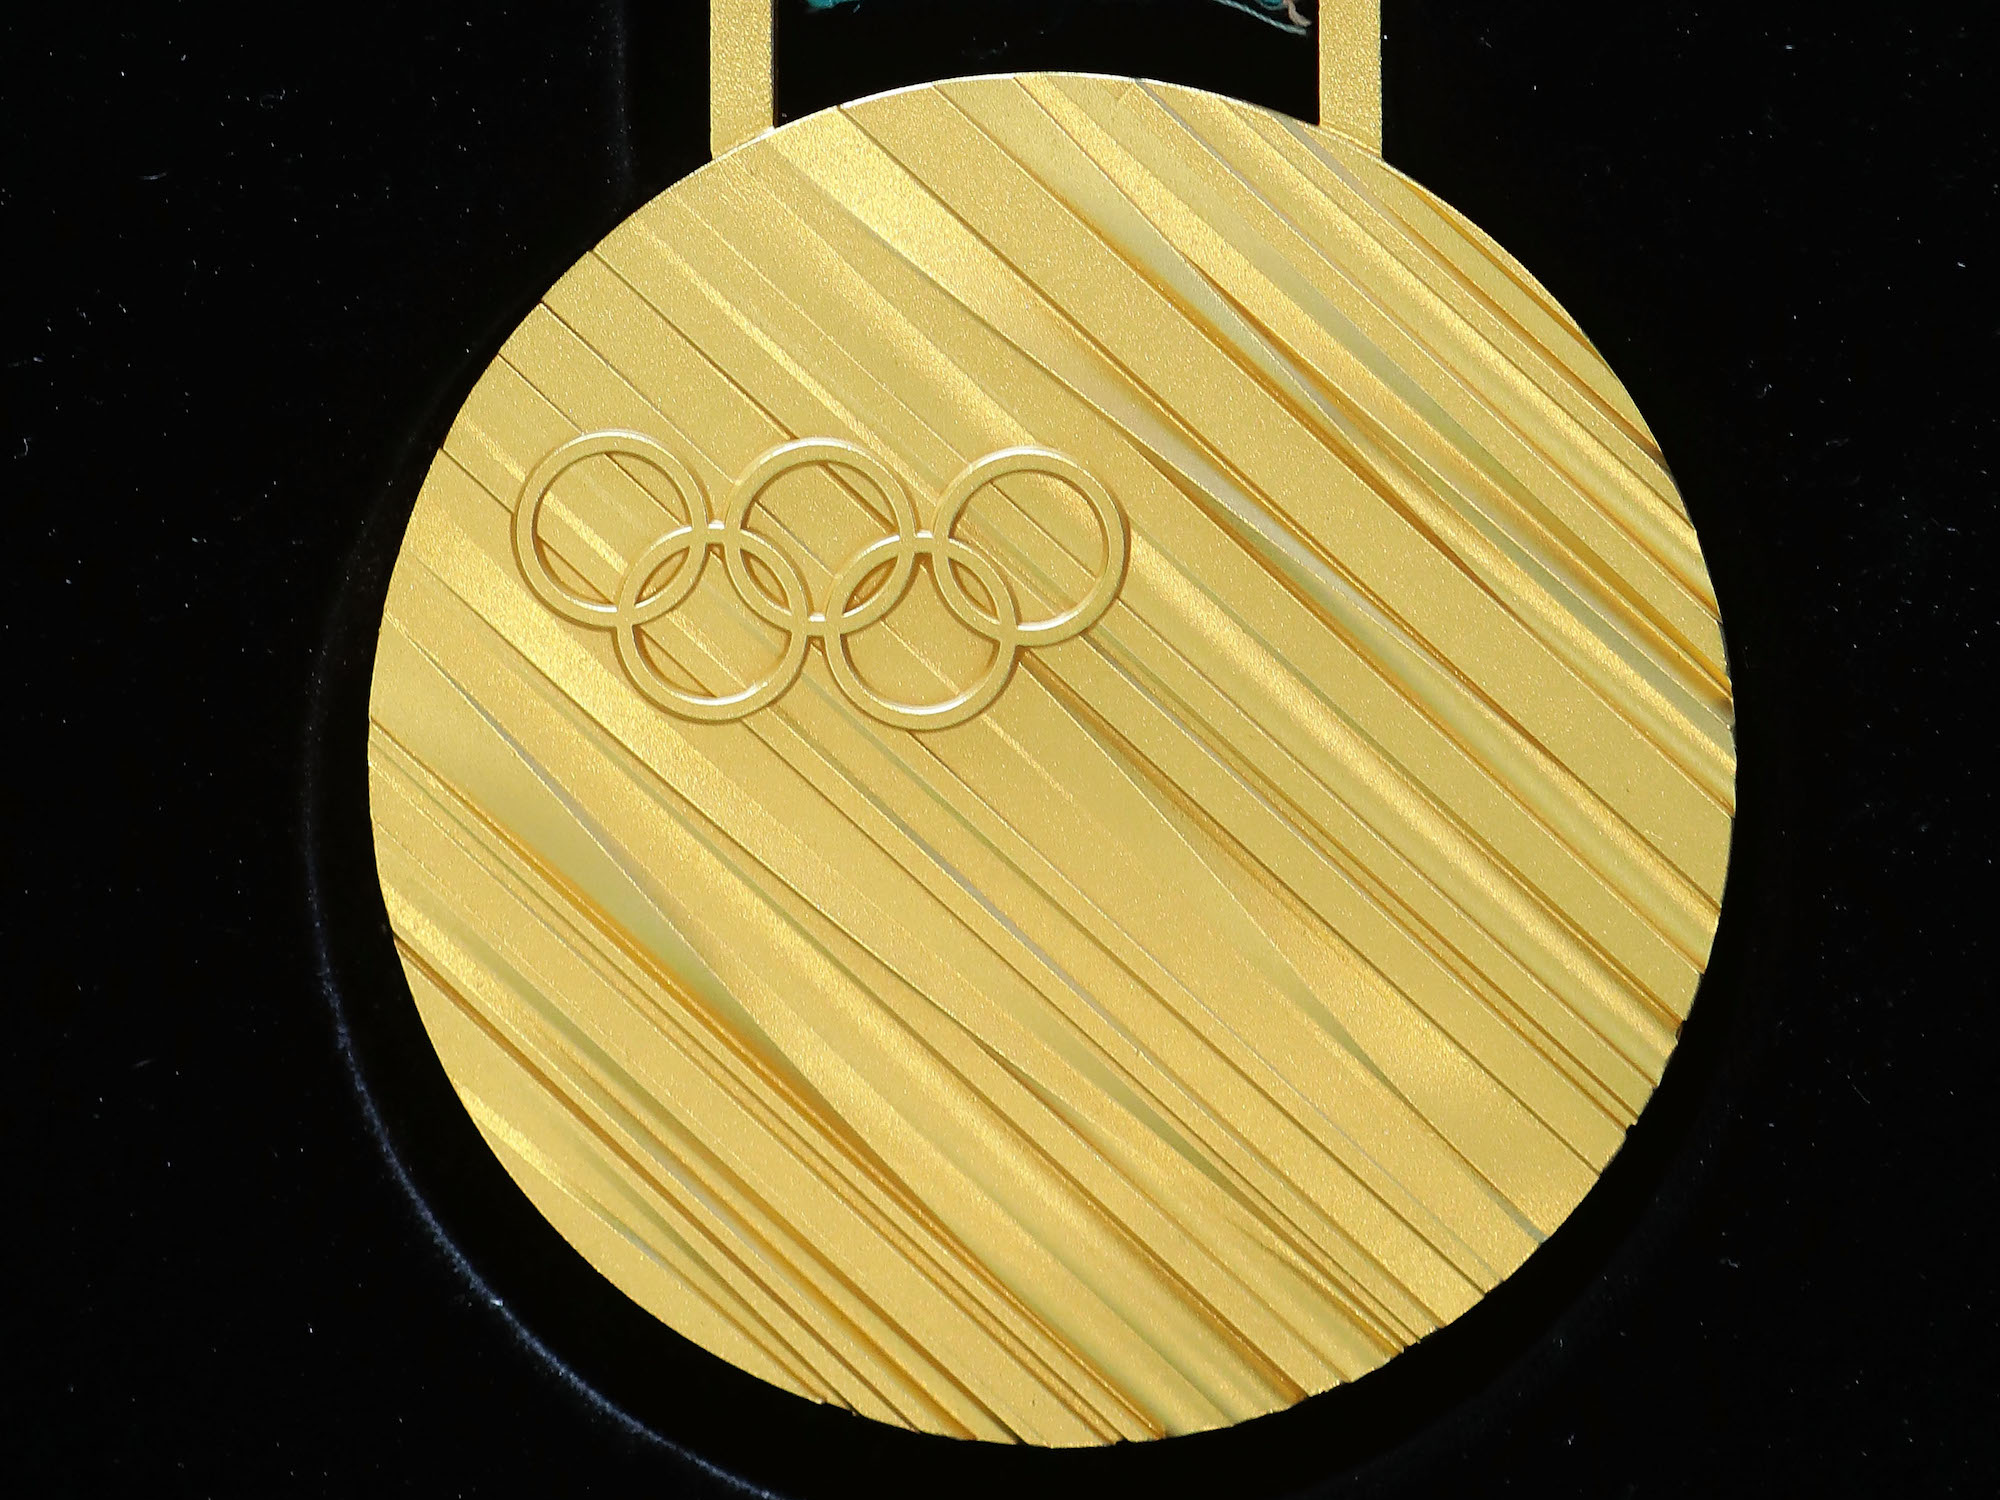 Первую золотую медаль на олимпийских играх